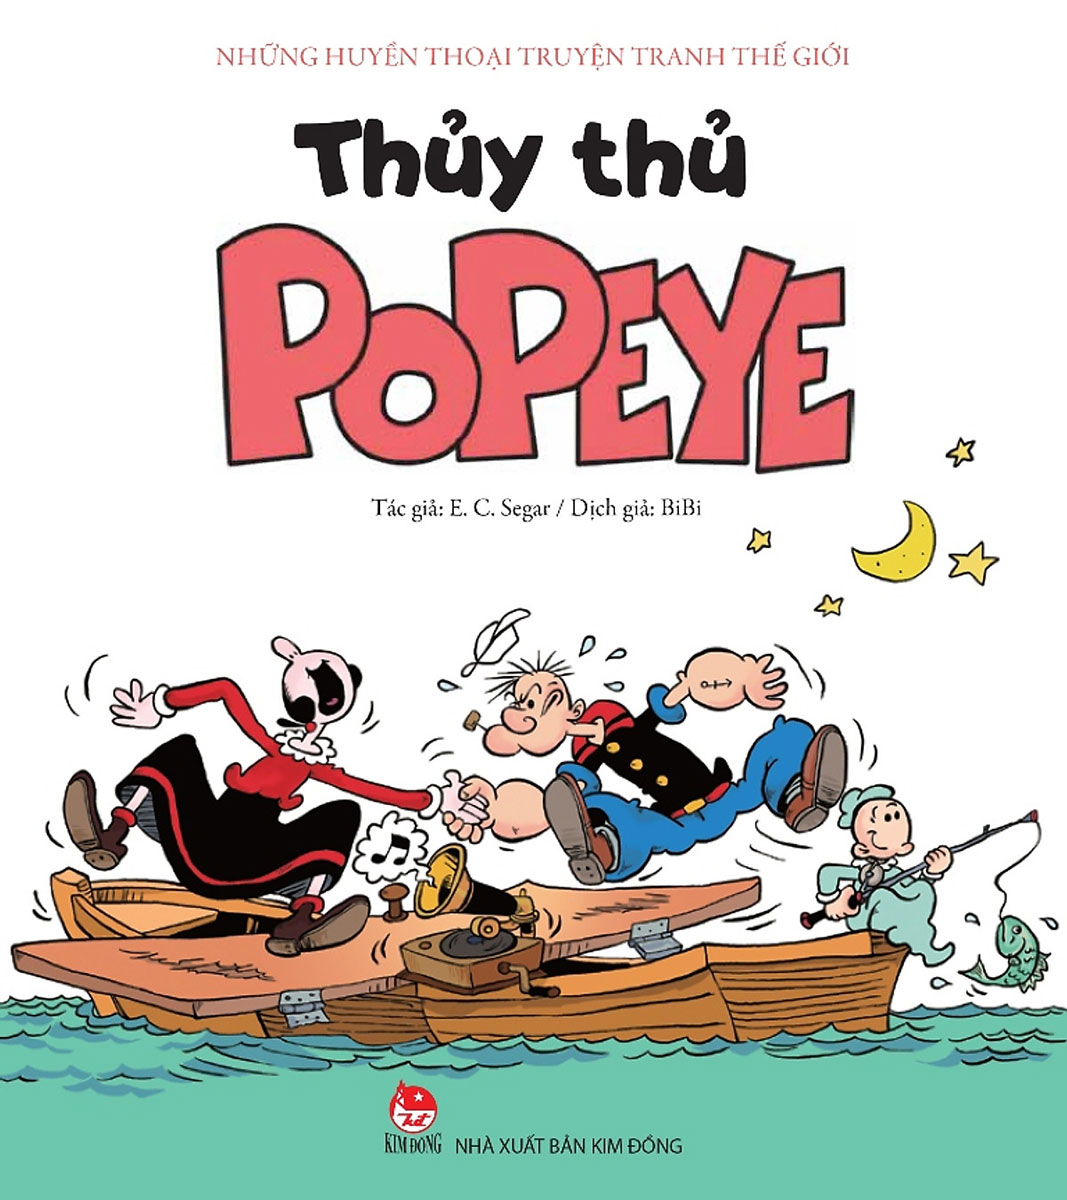 Những Huyền Thoại Truyện Tranh Thế Giới - Thủy Thủ Popeye